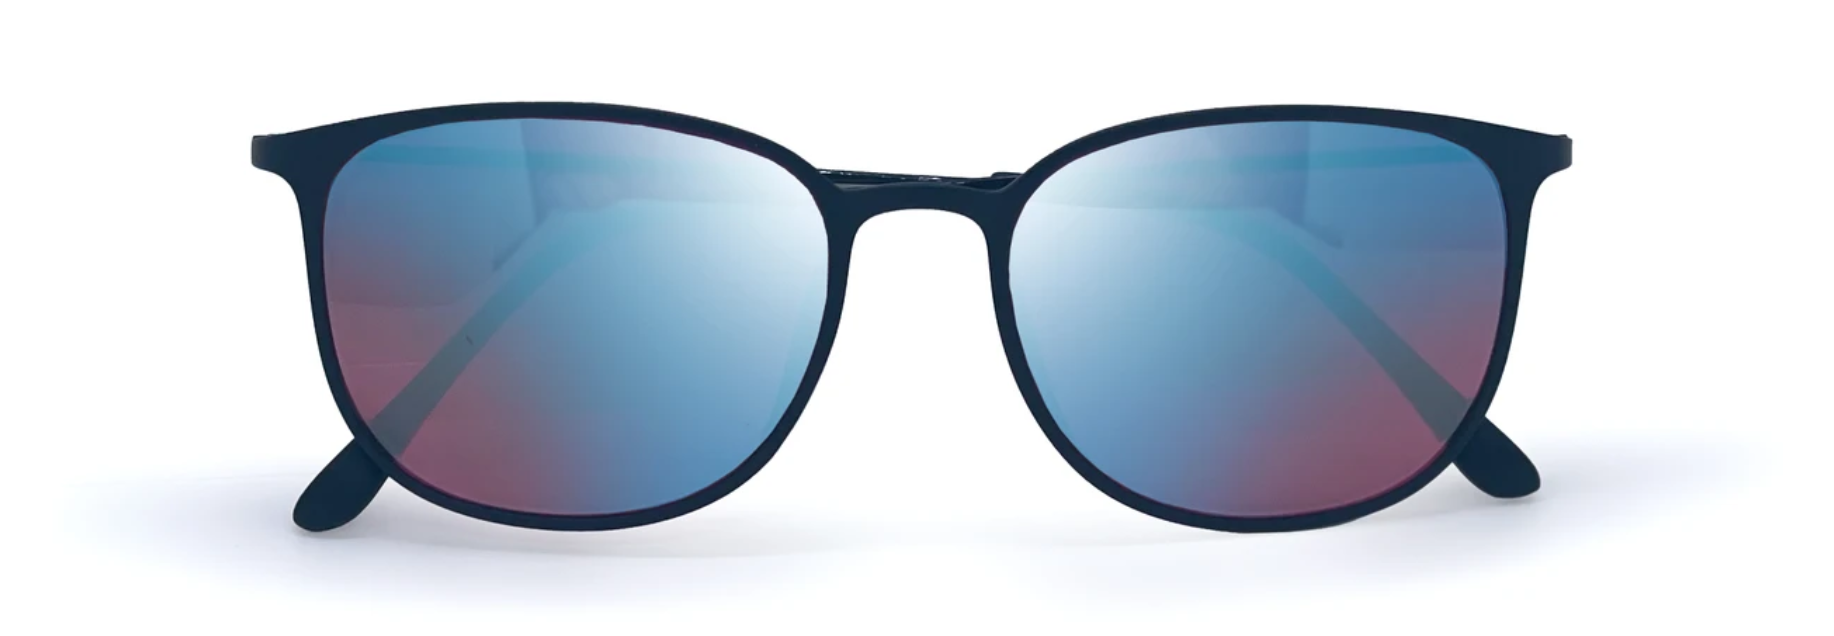 Bestel een kleurenblindbril #1 ᐅ 30 dagen retour – COLORDROP